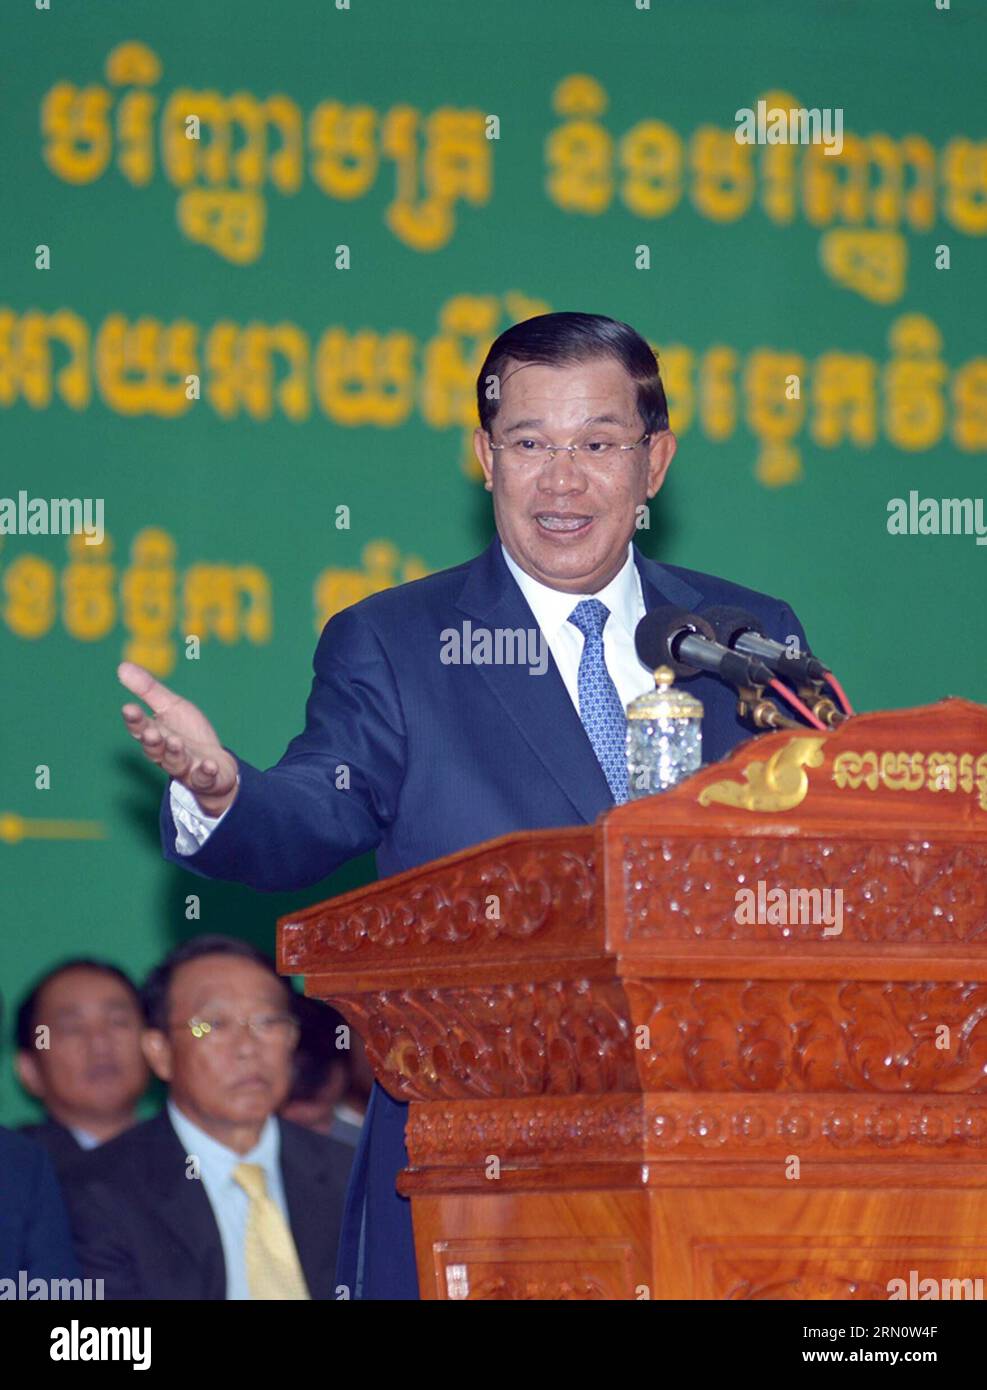 (141120) -- PHNOM PENH, le 20 novembre 2014 -- le Premier ministre cambodgien Hun Sen prend la parole à Phnom Penh, Cambodge, le 20 novembre 2014. Hun Sen a déclaré jeudi que lui et son gouvernement n'avaient pas le droit d'ordonner aux tribunaux d'arrêter ou de libérer les suspects ayant commis des crimes. (Bxq) CAMBODGE-PHNOM PENH-PM Sovannara PUBLICATIONxNOTxINxCHN Phnom Penh nov. 20 2014 les premiers ministres cambodgiens HUN Sen prennent la parole à Phnom Penh Cambodge nov. 20 2014 HUN Sen a déclaré jeudi Thatcher que son gouvernement et lui n'ont aucun droit d'ordonner aux tribunaux d'arrêter ou de libérer les suspects ayant commis DES CRIMES Cambodge Phnom Banque D'Images